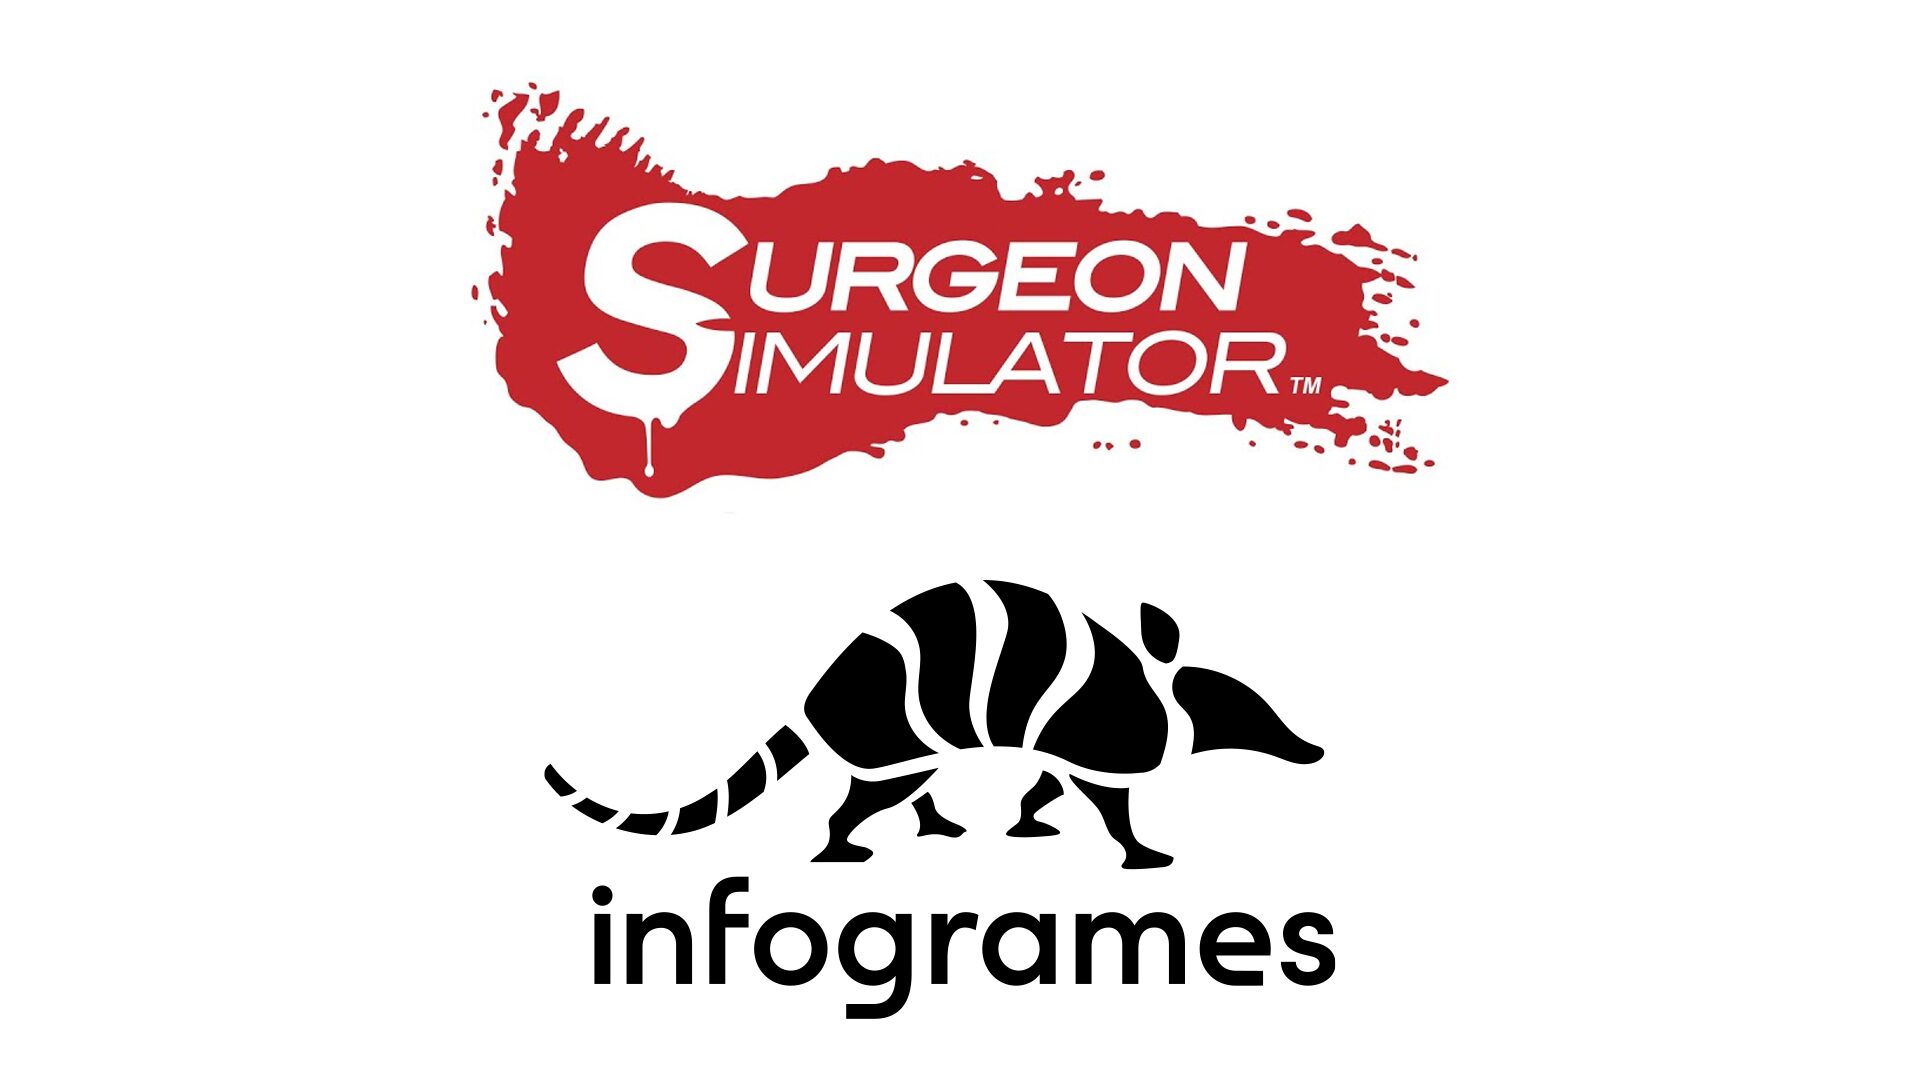 #
      Infogrames acquires Surgeon Simulator